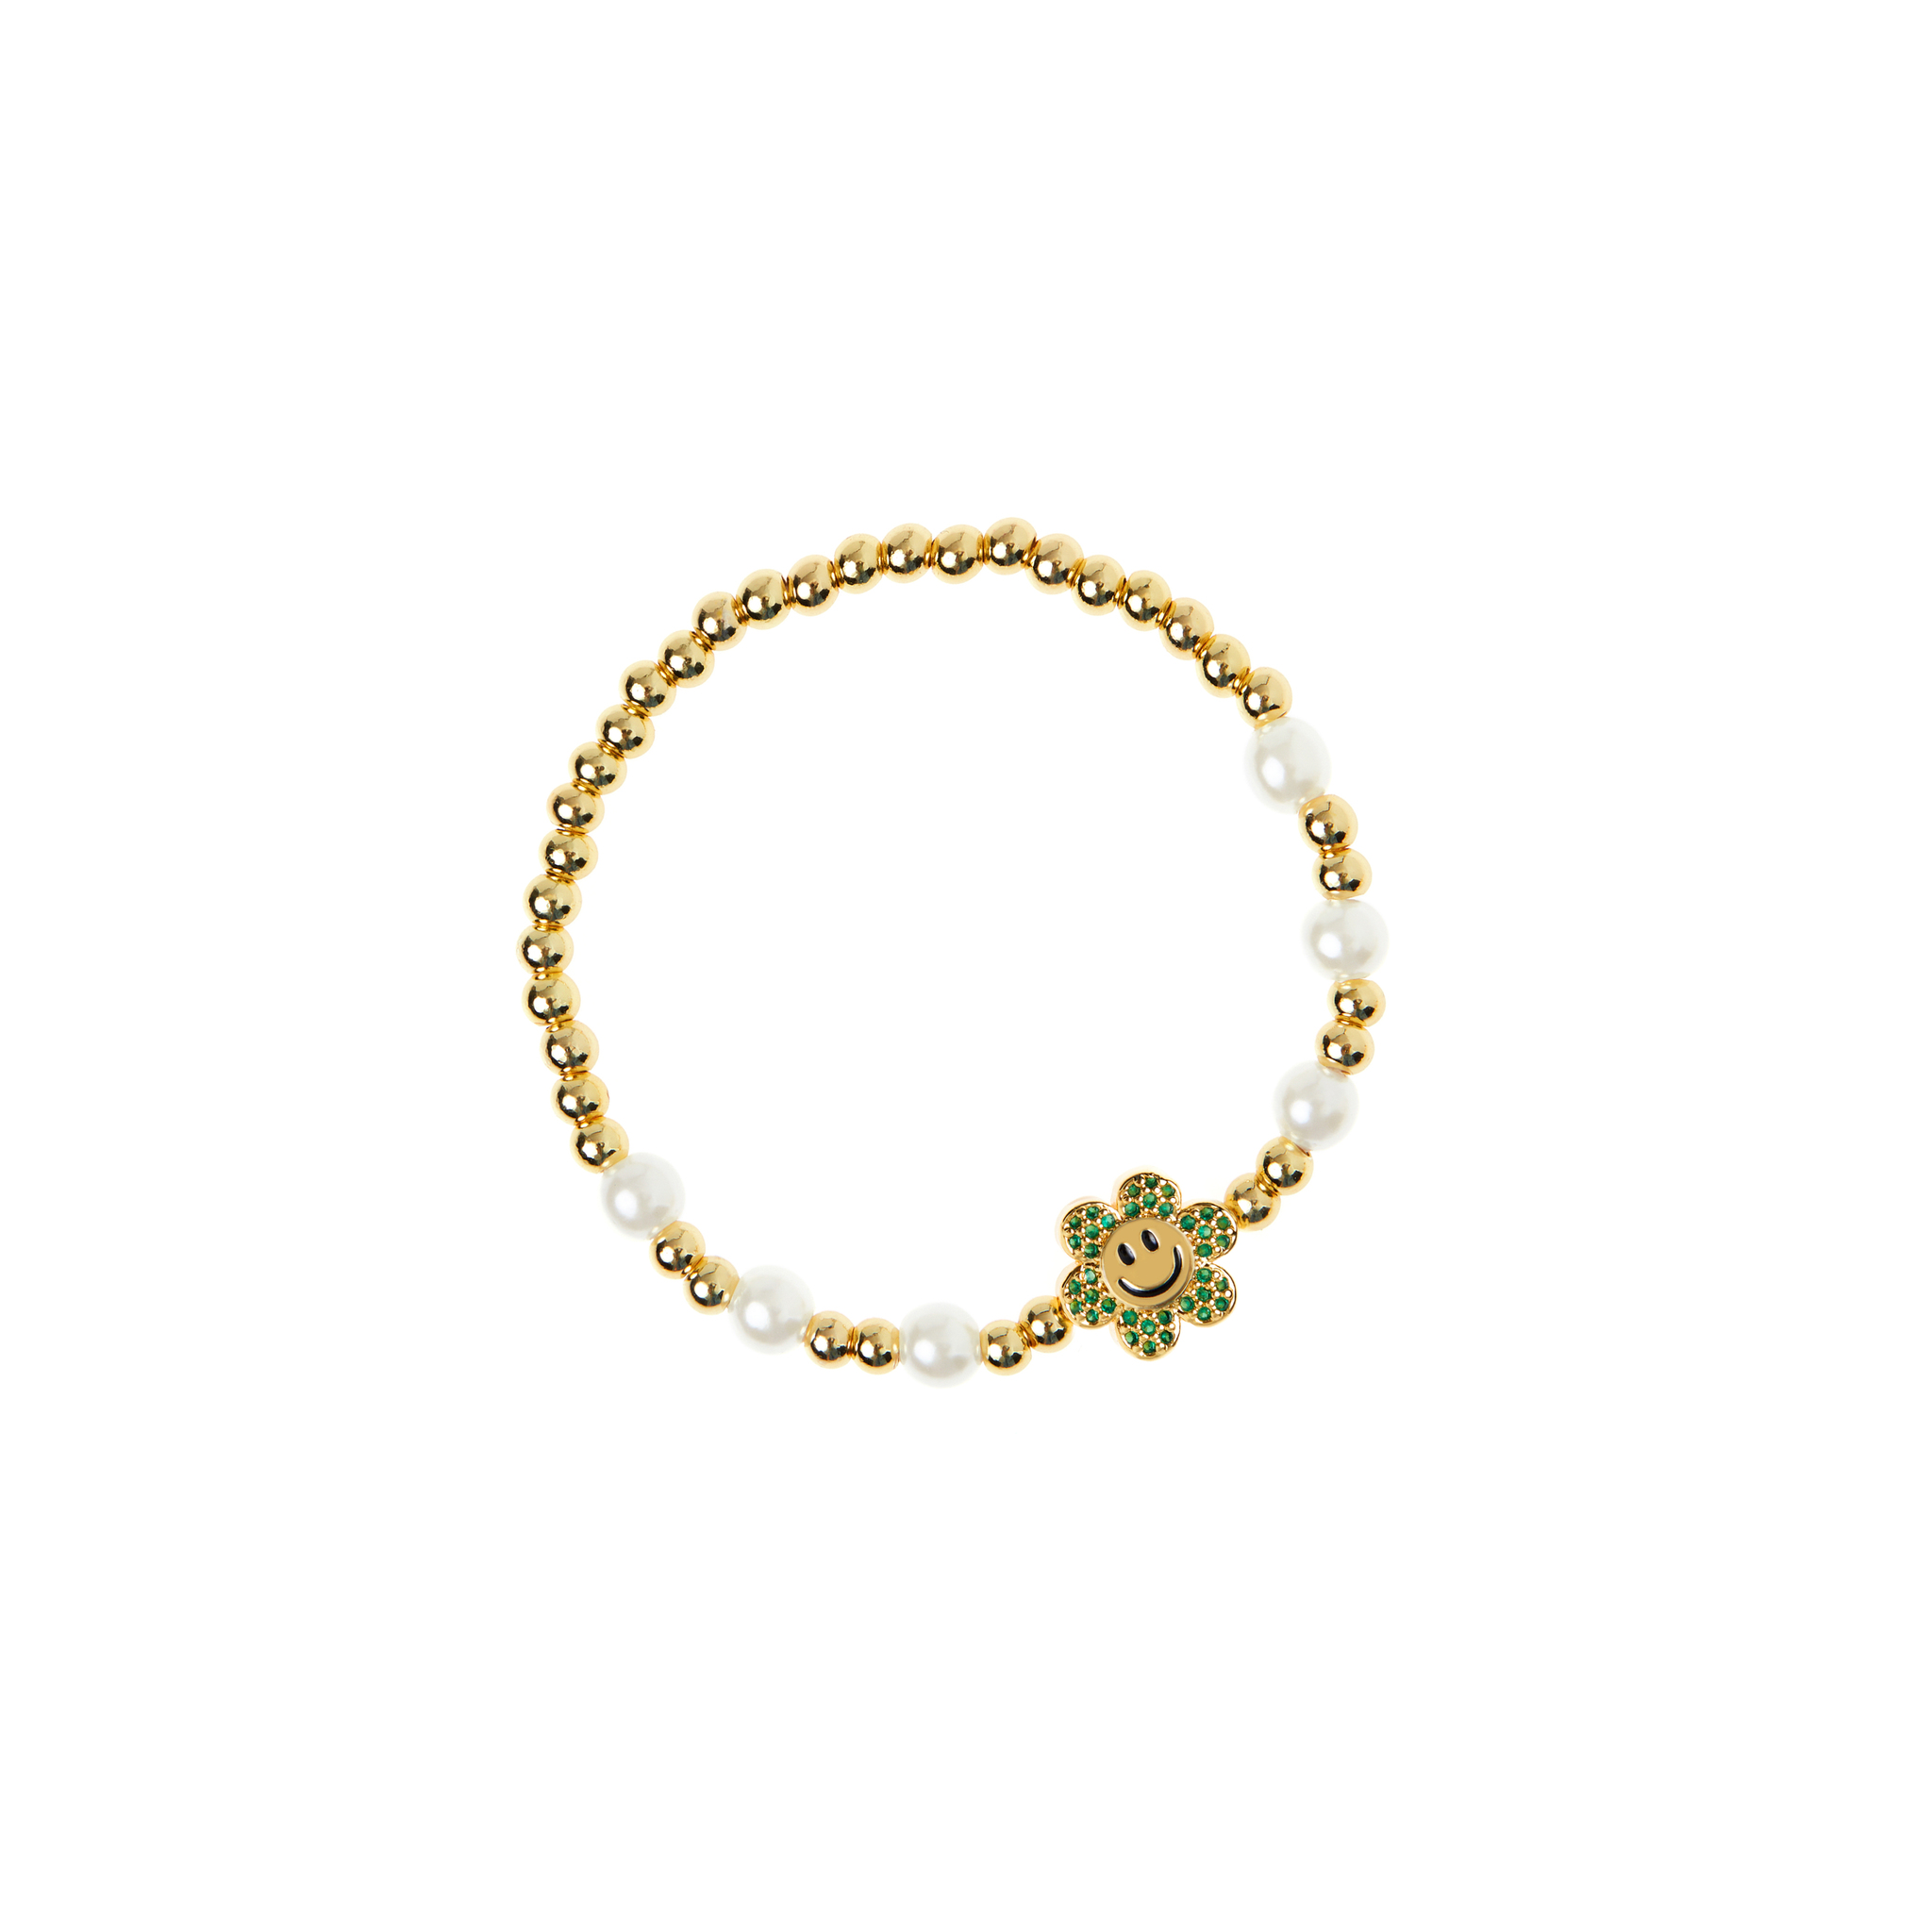 DÉJÀ VU Браслет Pearly Gold Smiley Flowers Bracelet - Green déjà vu браслет pearly gold smiley flowers bracelet green